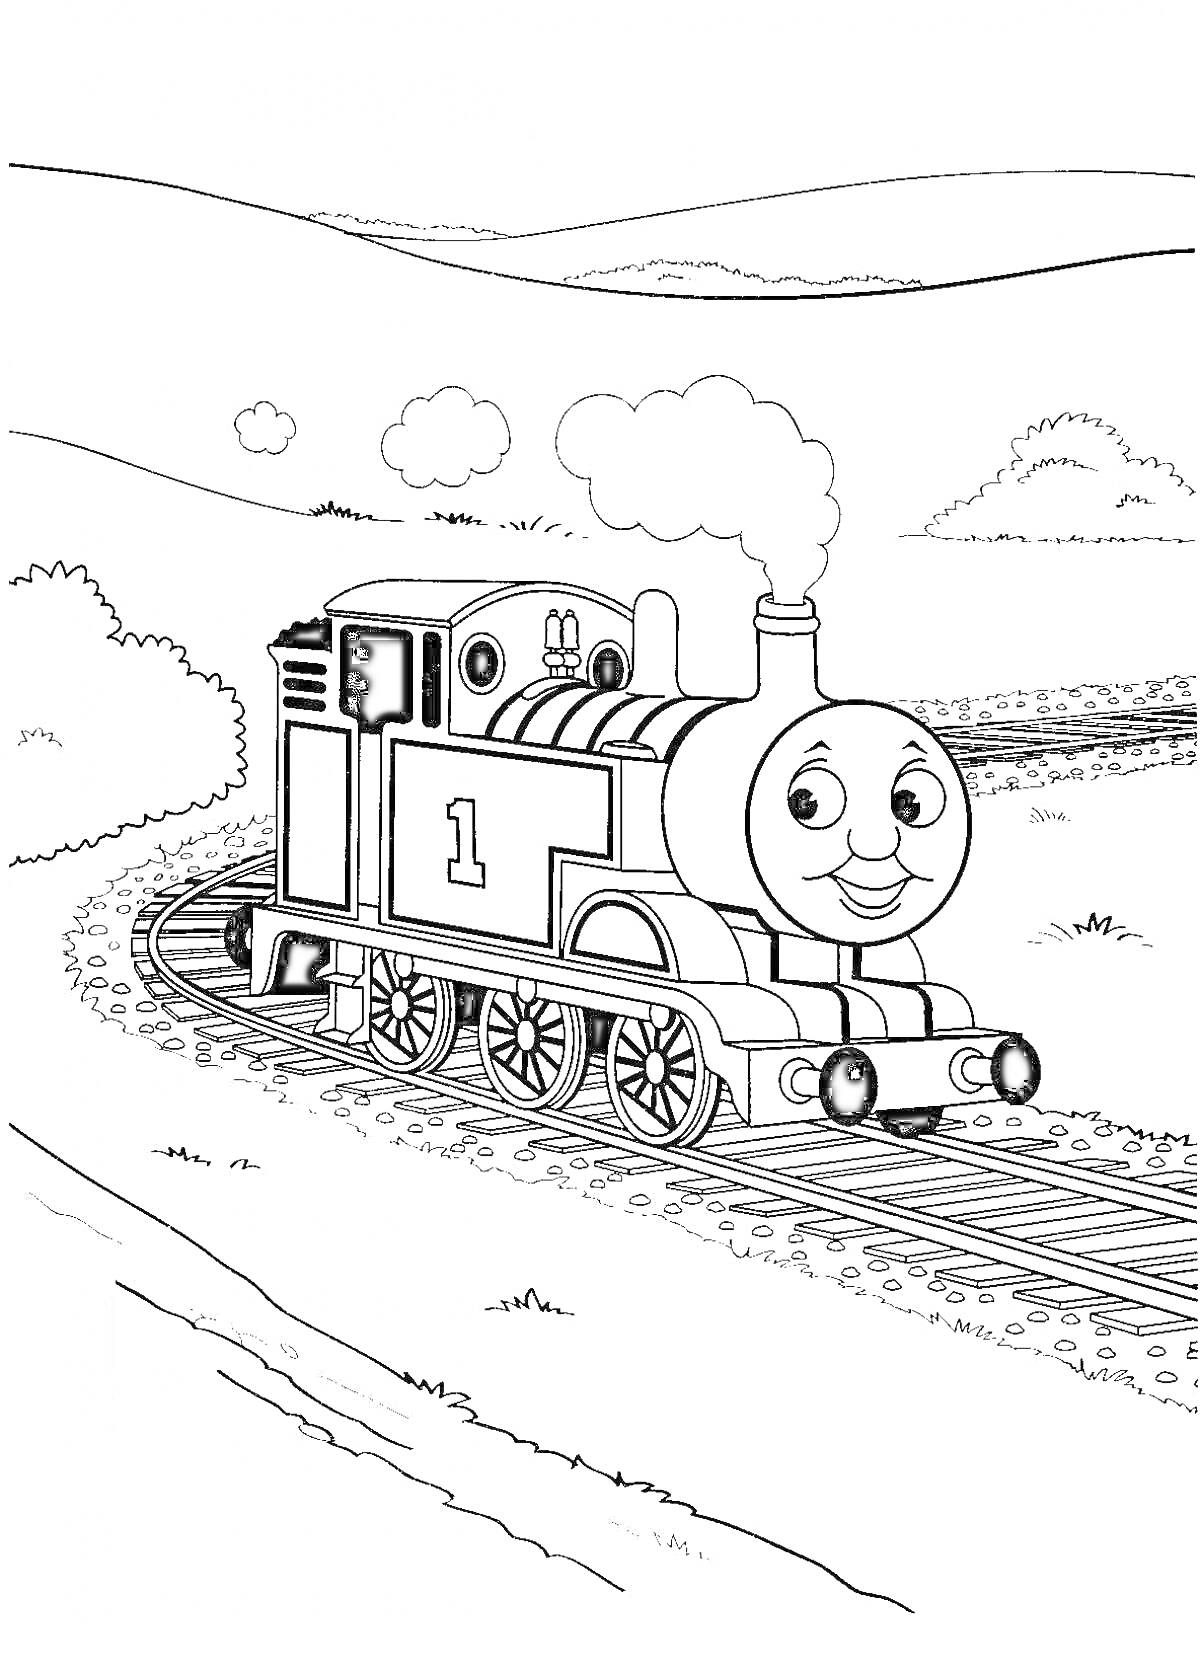 РаскраскаРаскраска Паровозик Томас на железной дороге среди природы